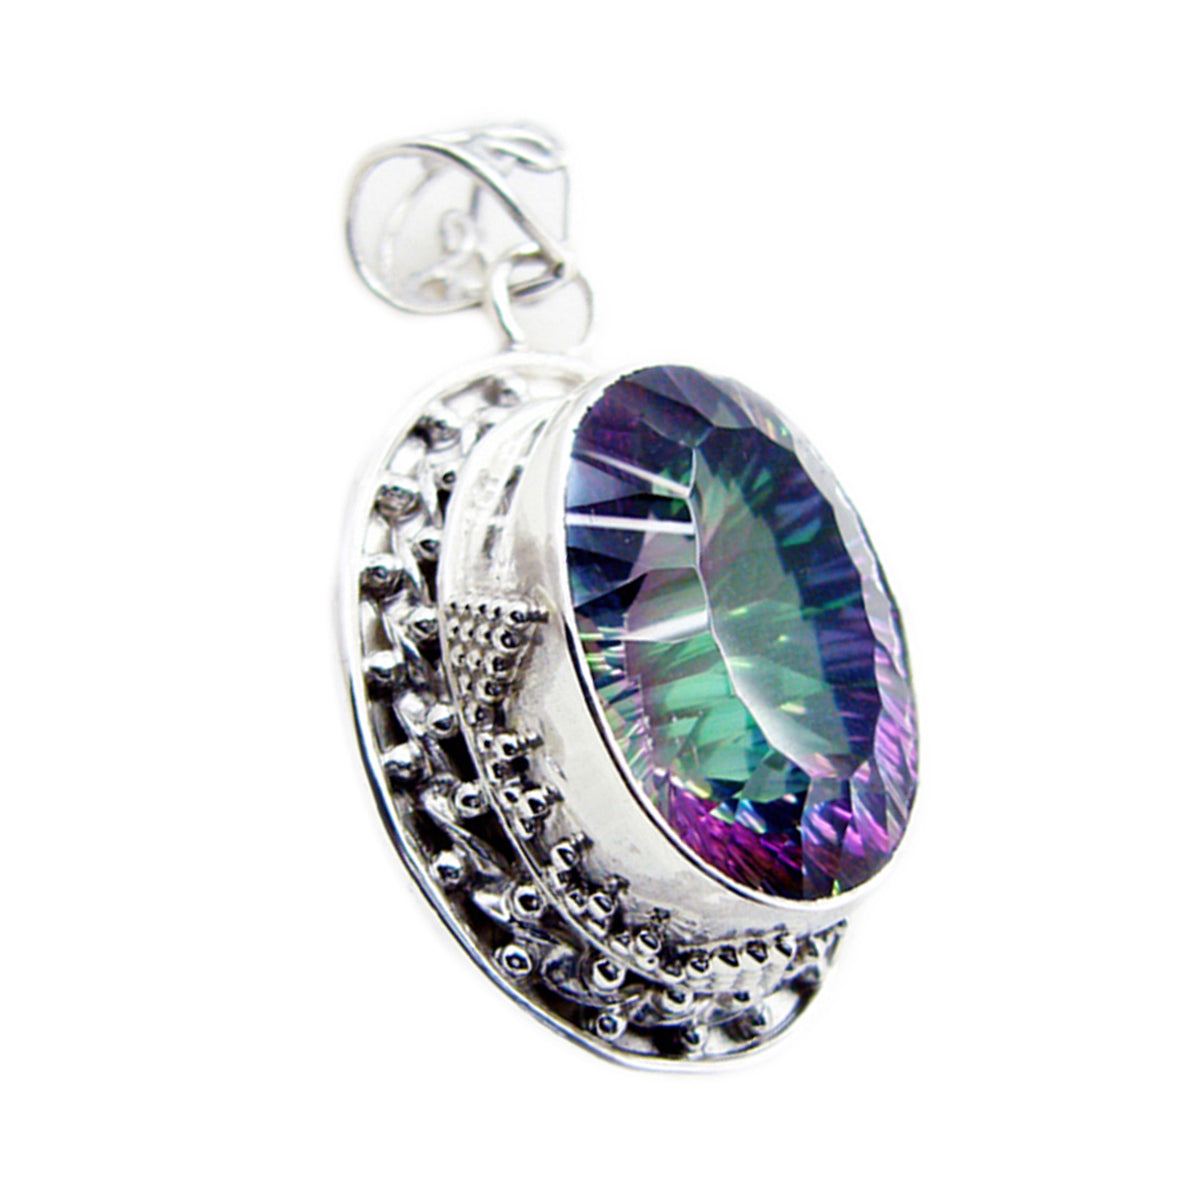 riyo attraente gemme ovali sfaccettate multicolore quarzo mistico ciondolo in argento regalo per fidanzamento